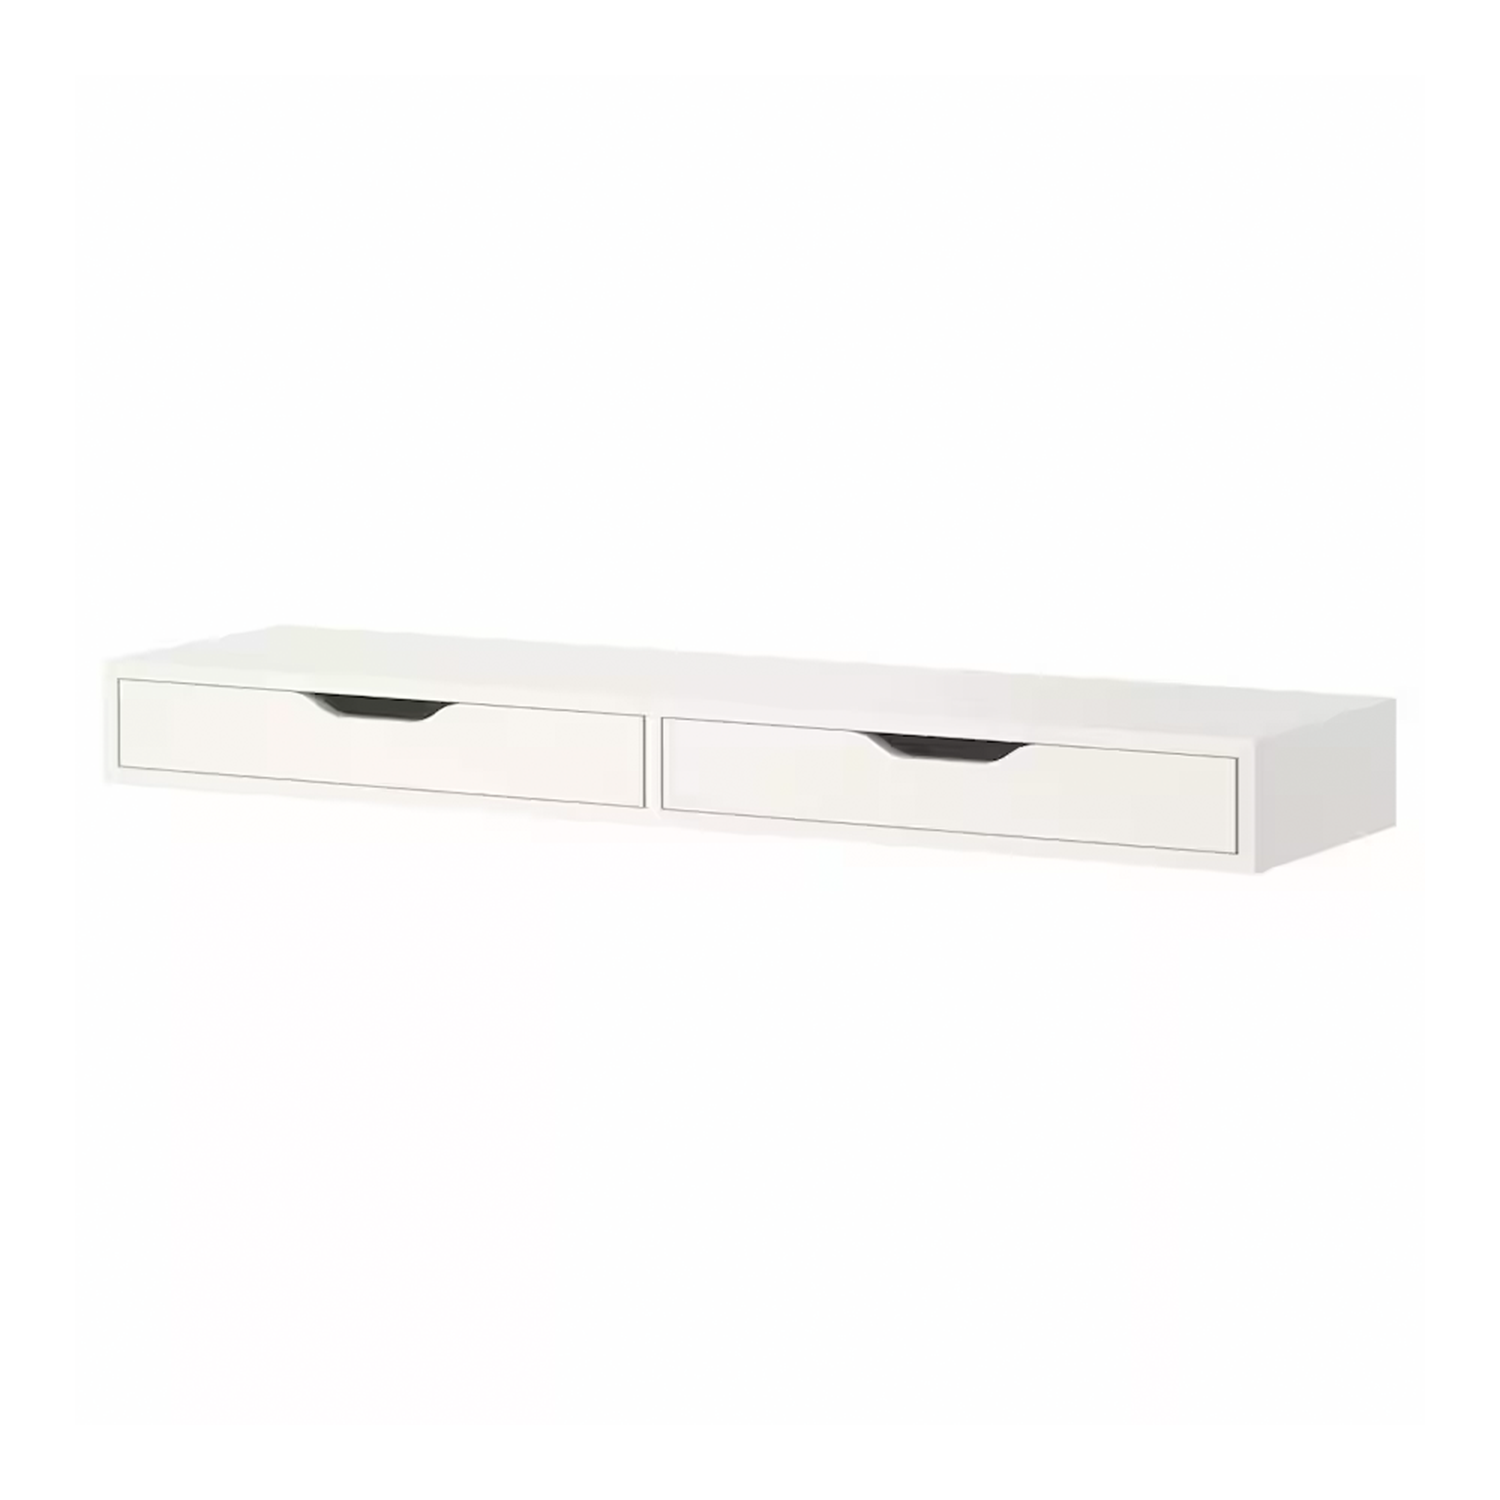 EKBY ALEX Shelf with drawers, white